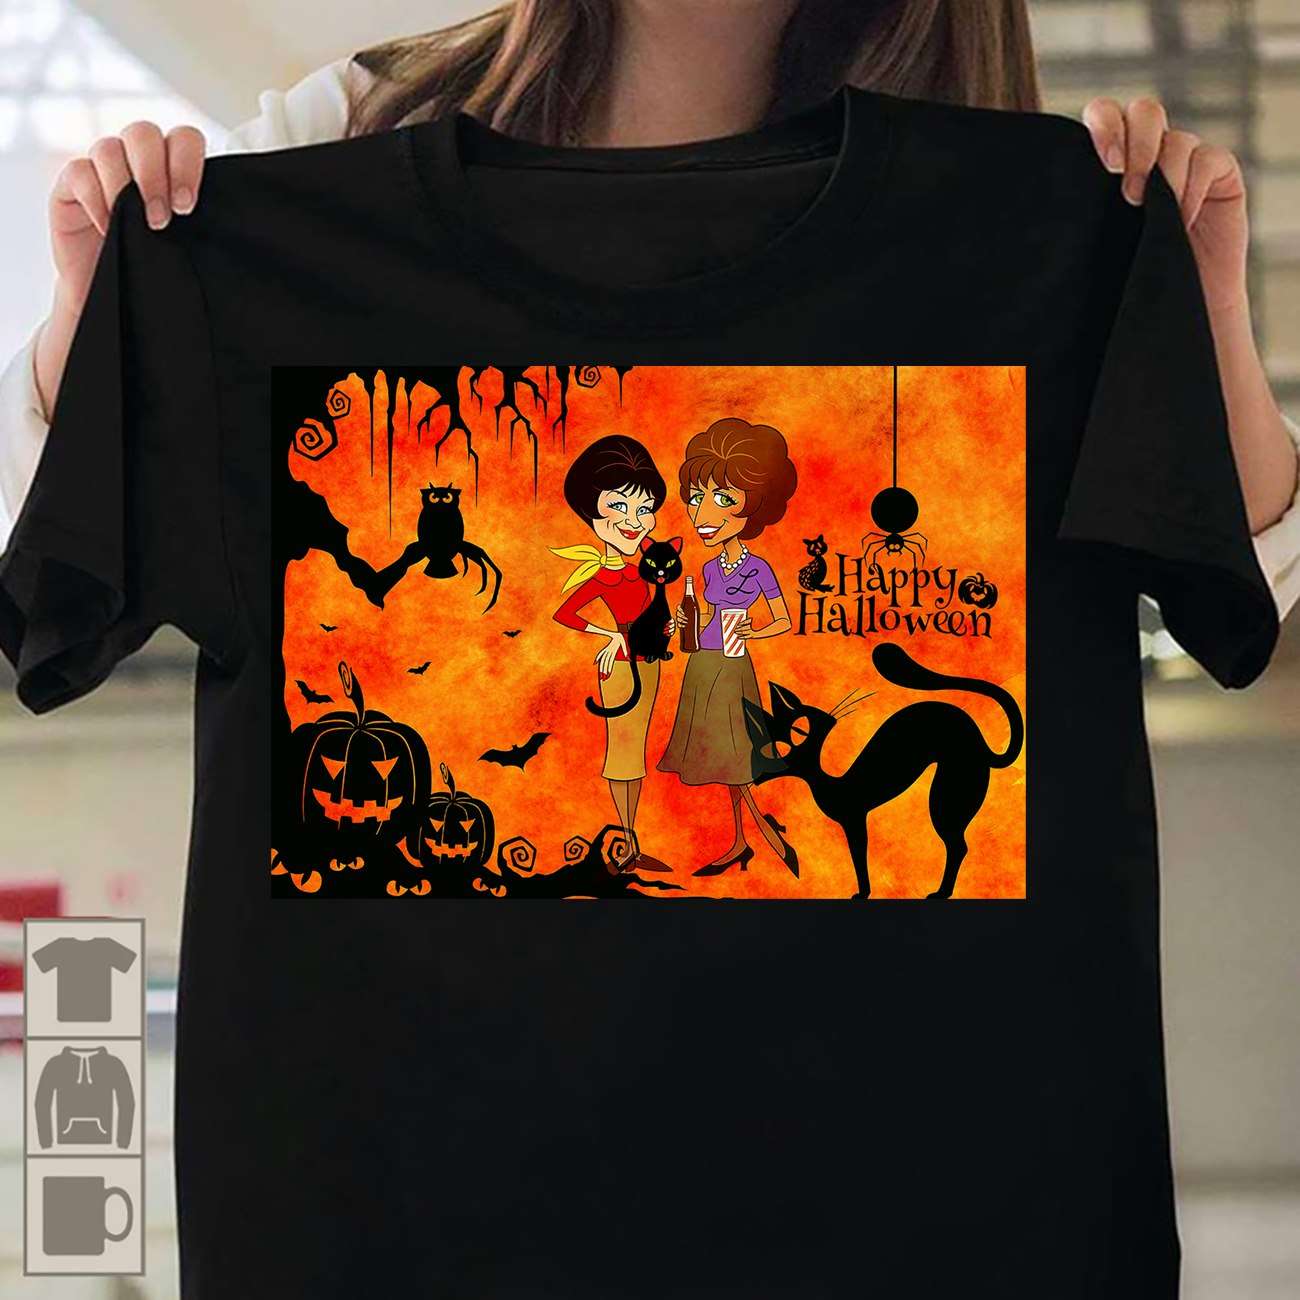 Happy Halloween - Halloween gift for woman, women and black cat, Halloween devil pumpkin